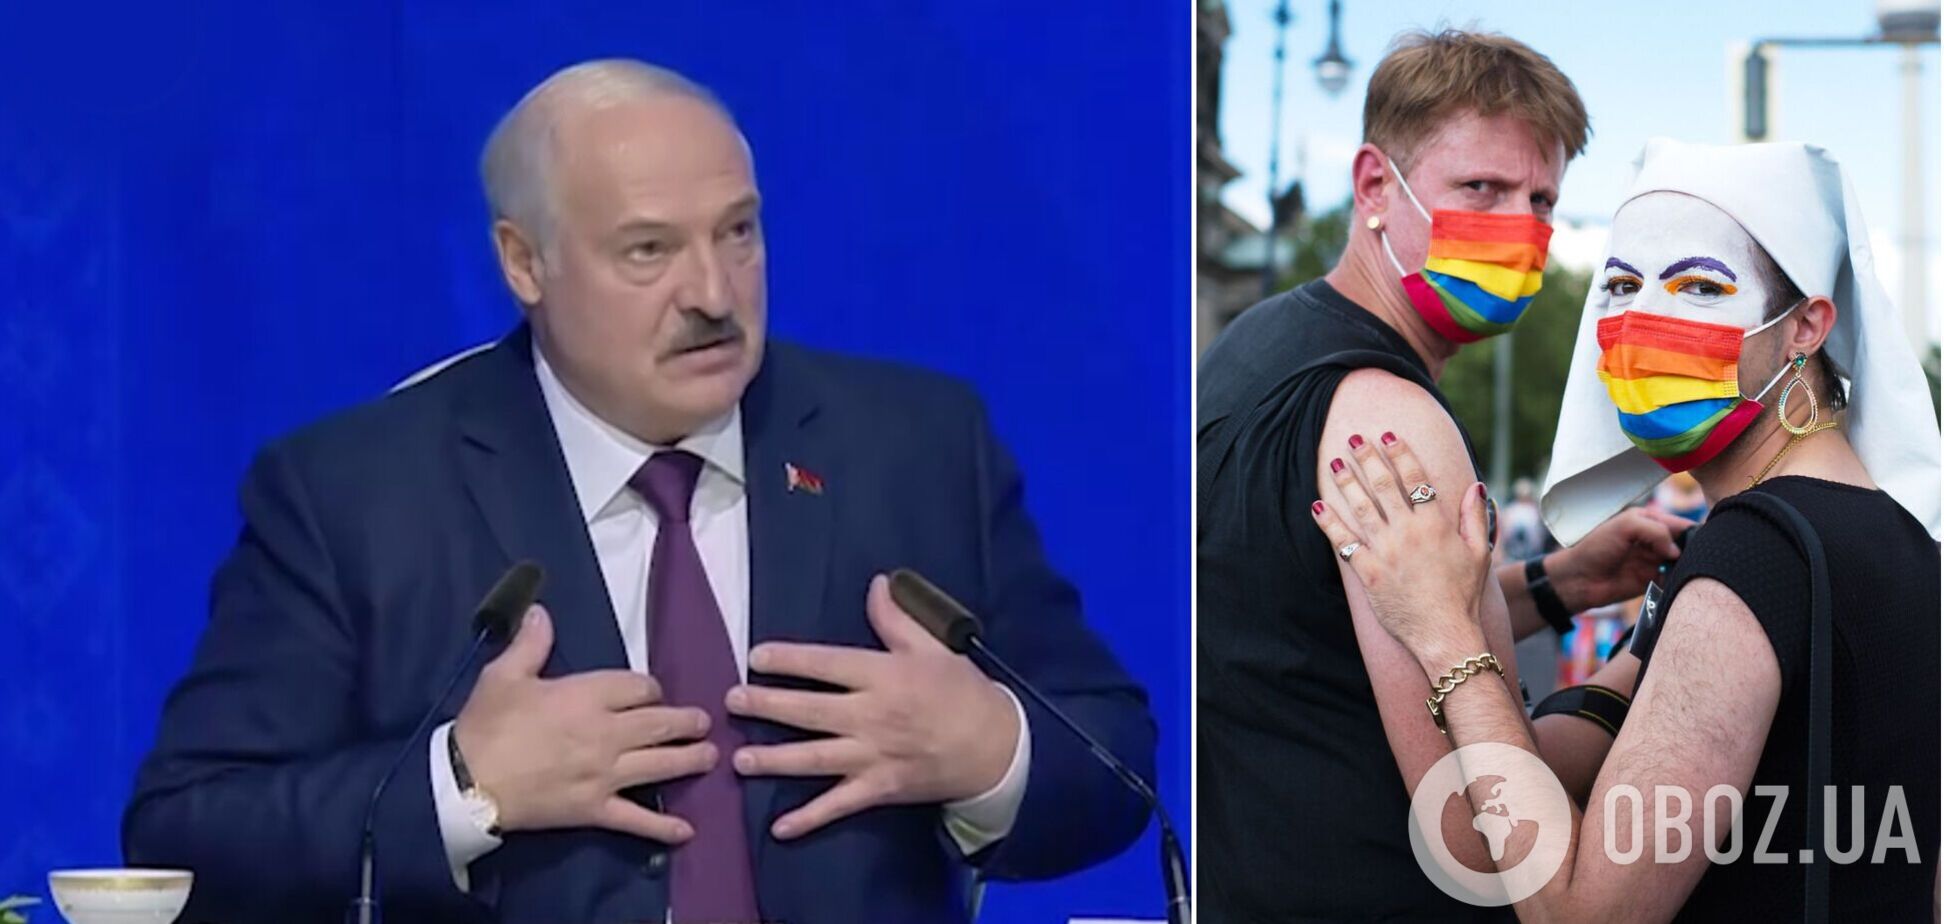 'Дівчаткам я вибачаю': Лукашенко перейняв 'досвід' Путіна і видав перл про геїв і лесбійок. Відео